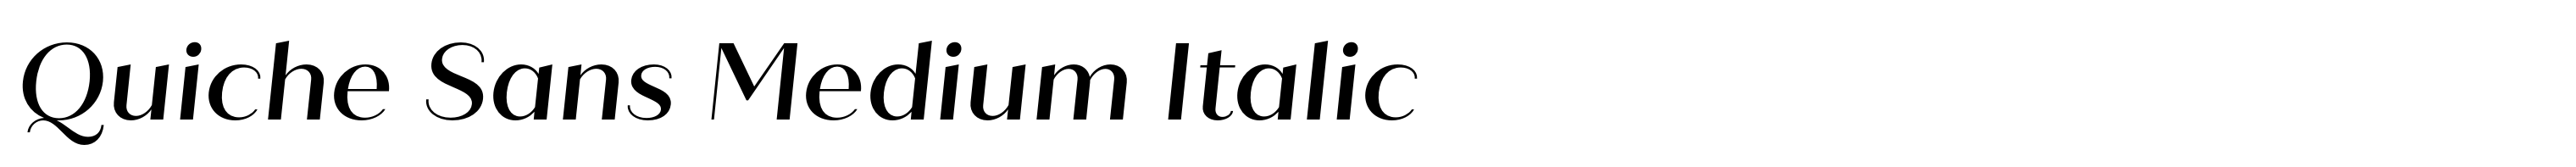 Quiche Sans Medium Italic